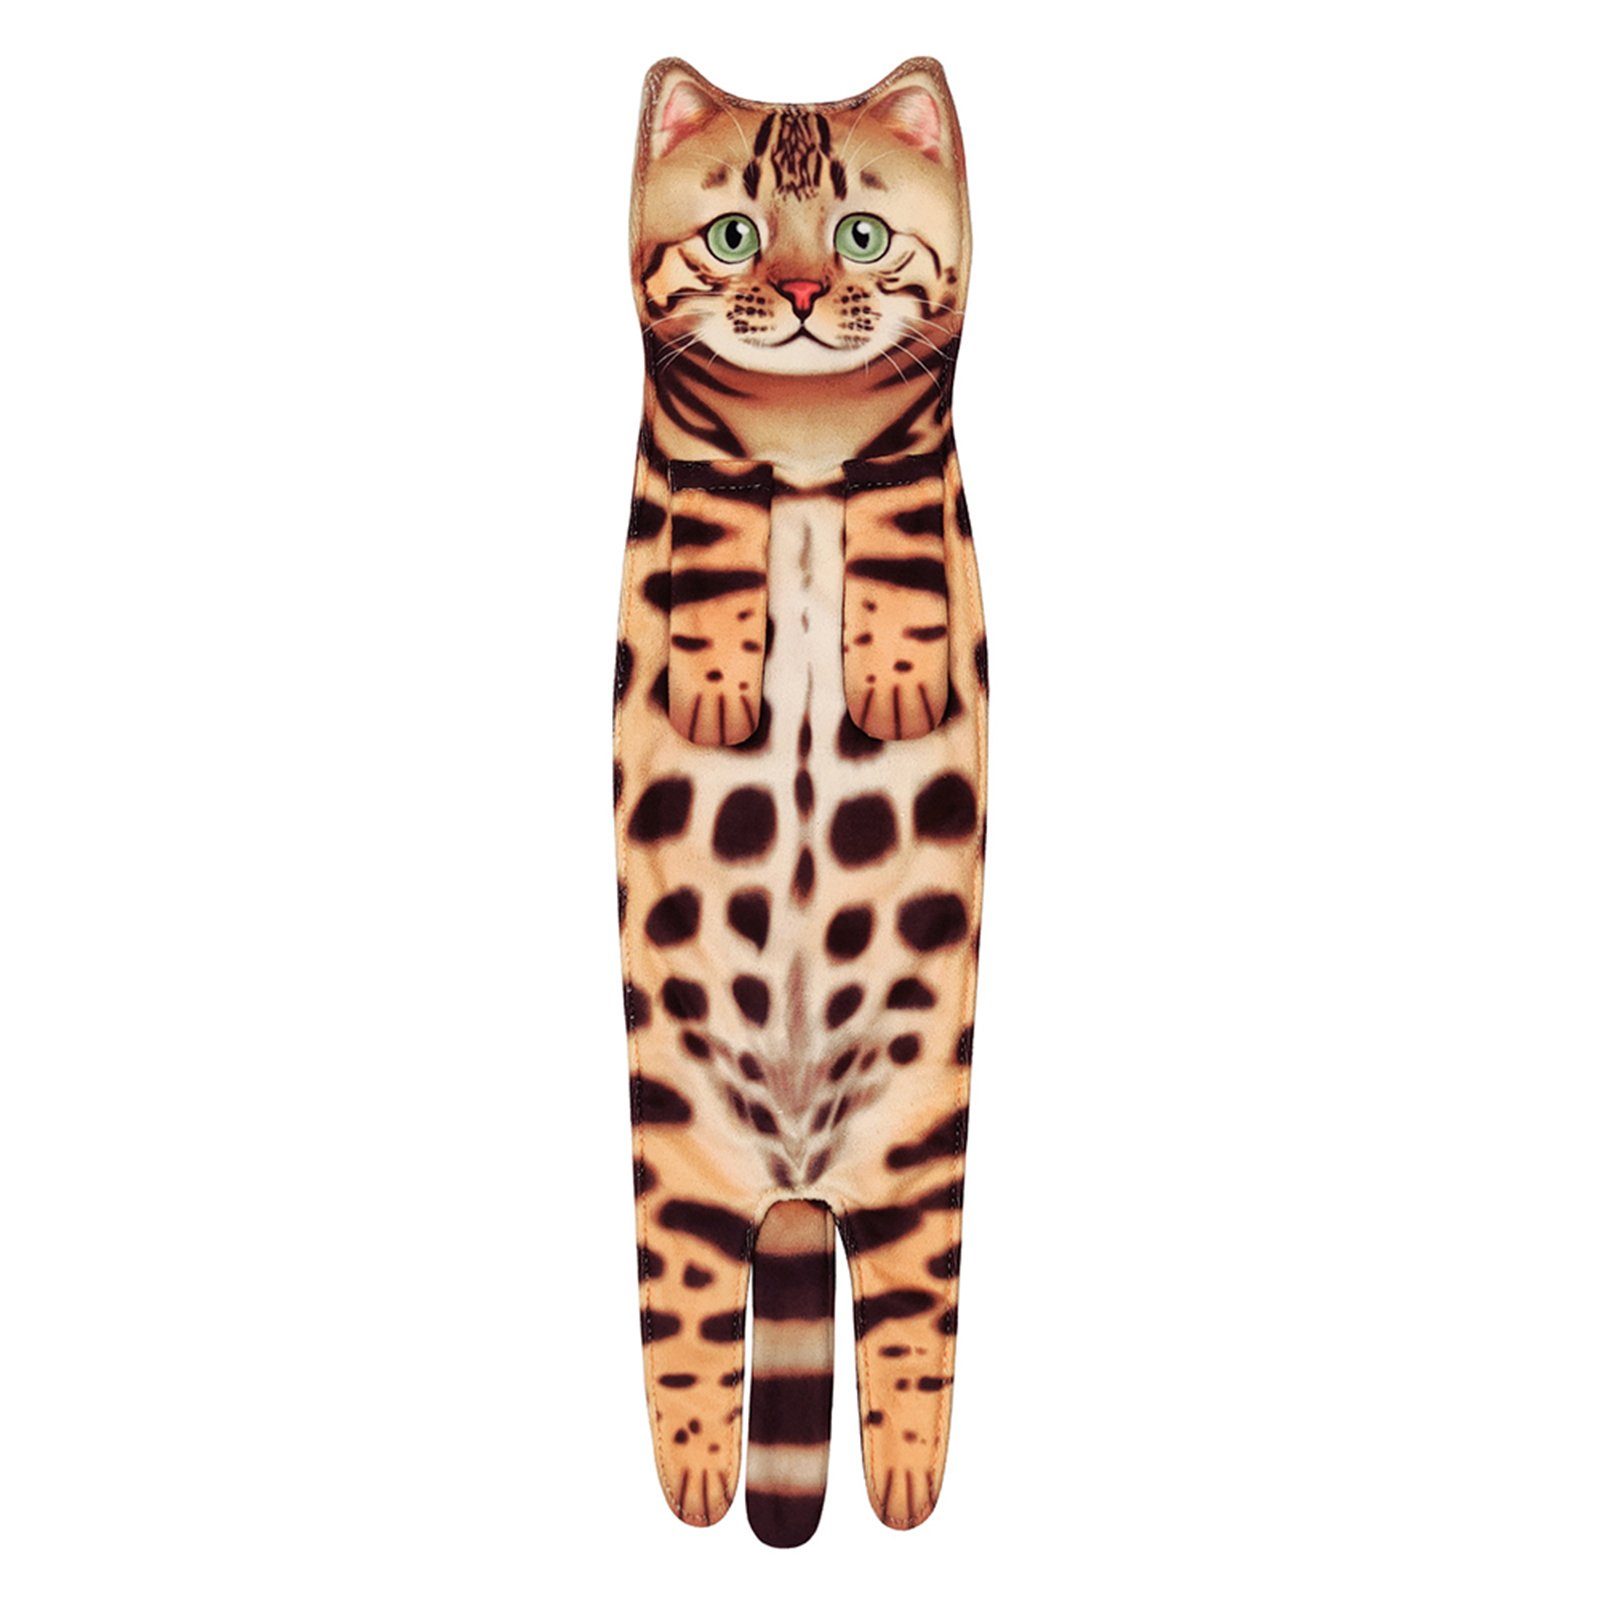 Zum Katzenhandtuch, ocelot Blusmart Mehrzweck-Mikrofaser-Gesichtshandtuch, Niedliches Handtuch cat Set